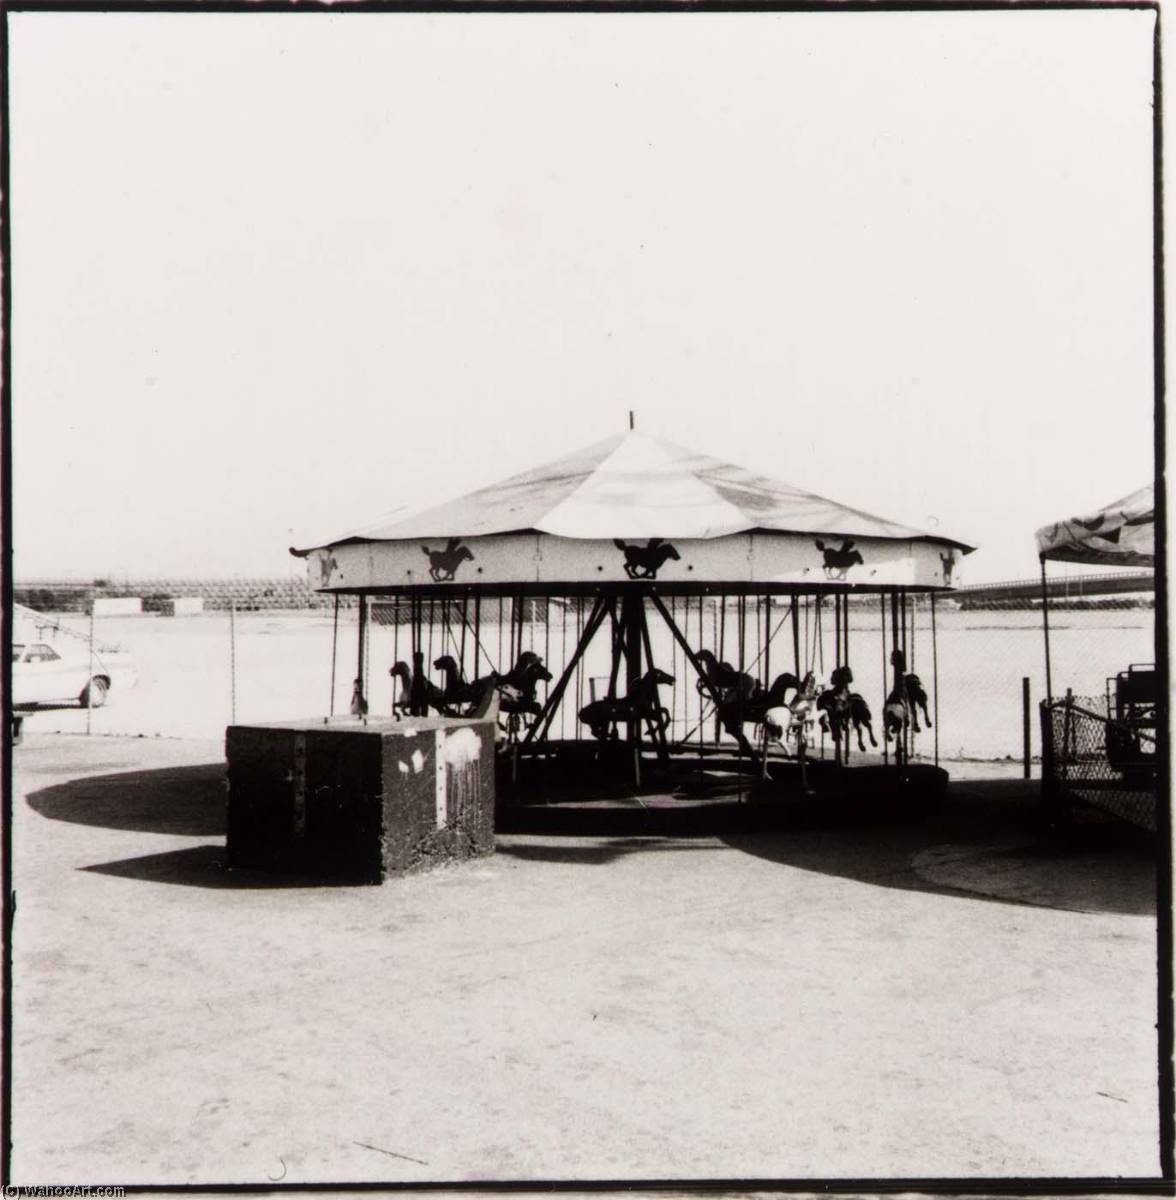 WikiOO.org - אנציקלופדיה לאמנויות יפות - ציור, יצירות אמנות Judy Fiskin - Long Beach Pike (carousel), from the Long Beach, California Documentary Survey Project